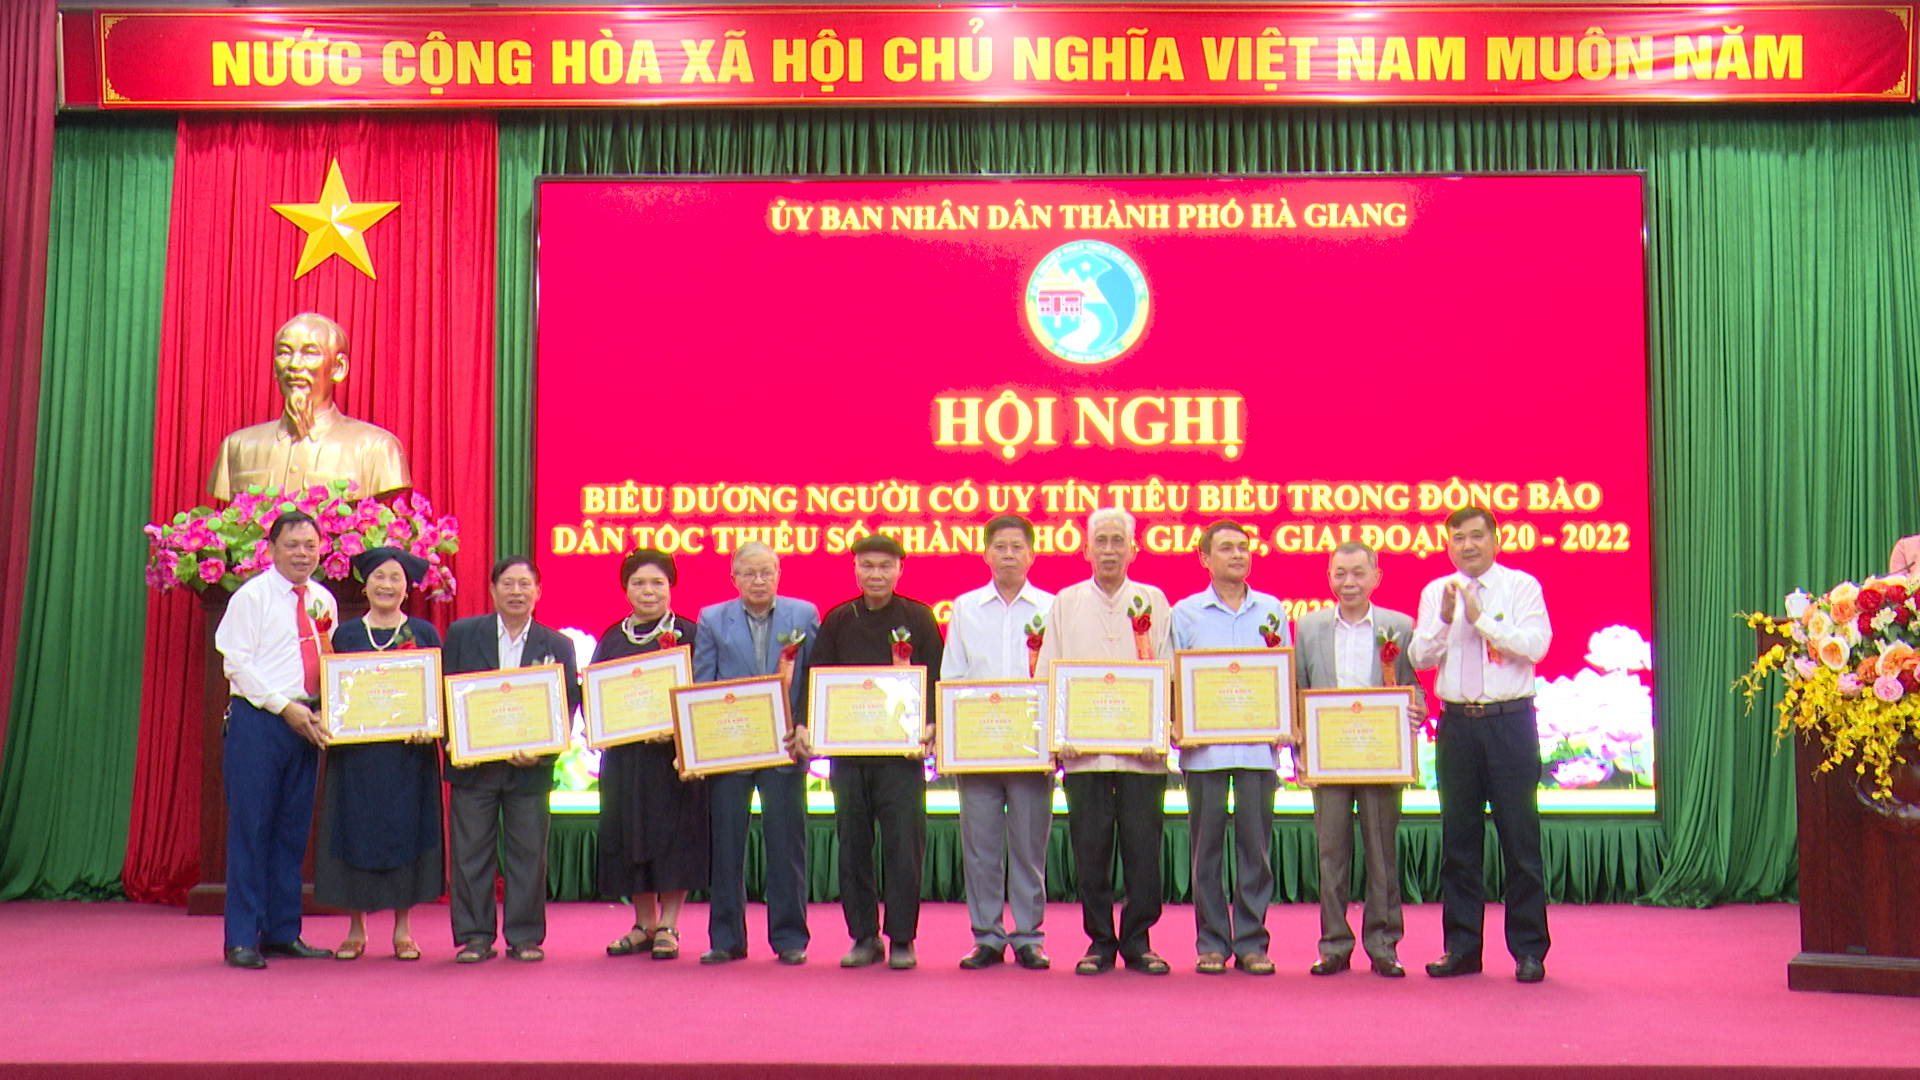 Thành phố Hà Giang biểu dương người có uy tín tiêu biểu trong đồng bào dân tộc thiểu số